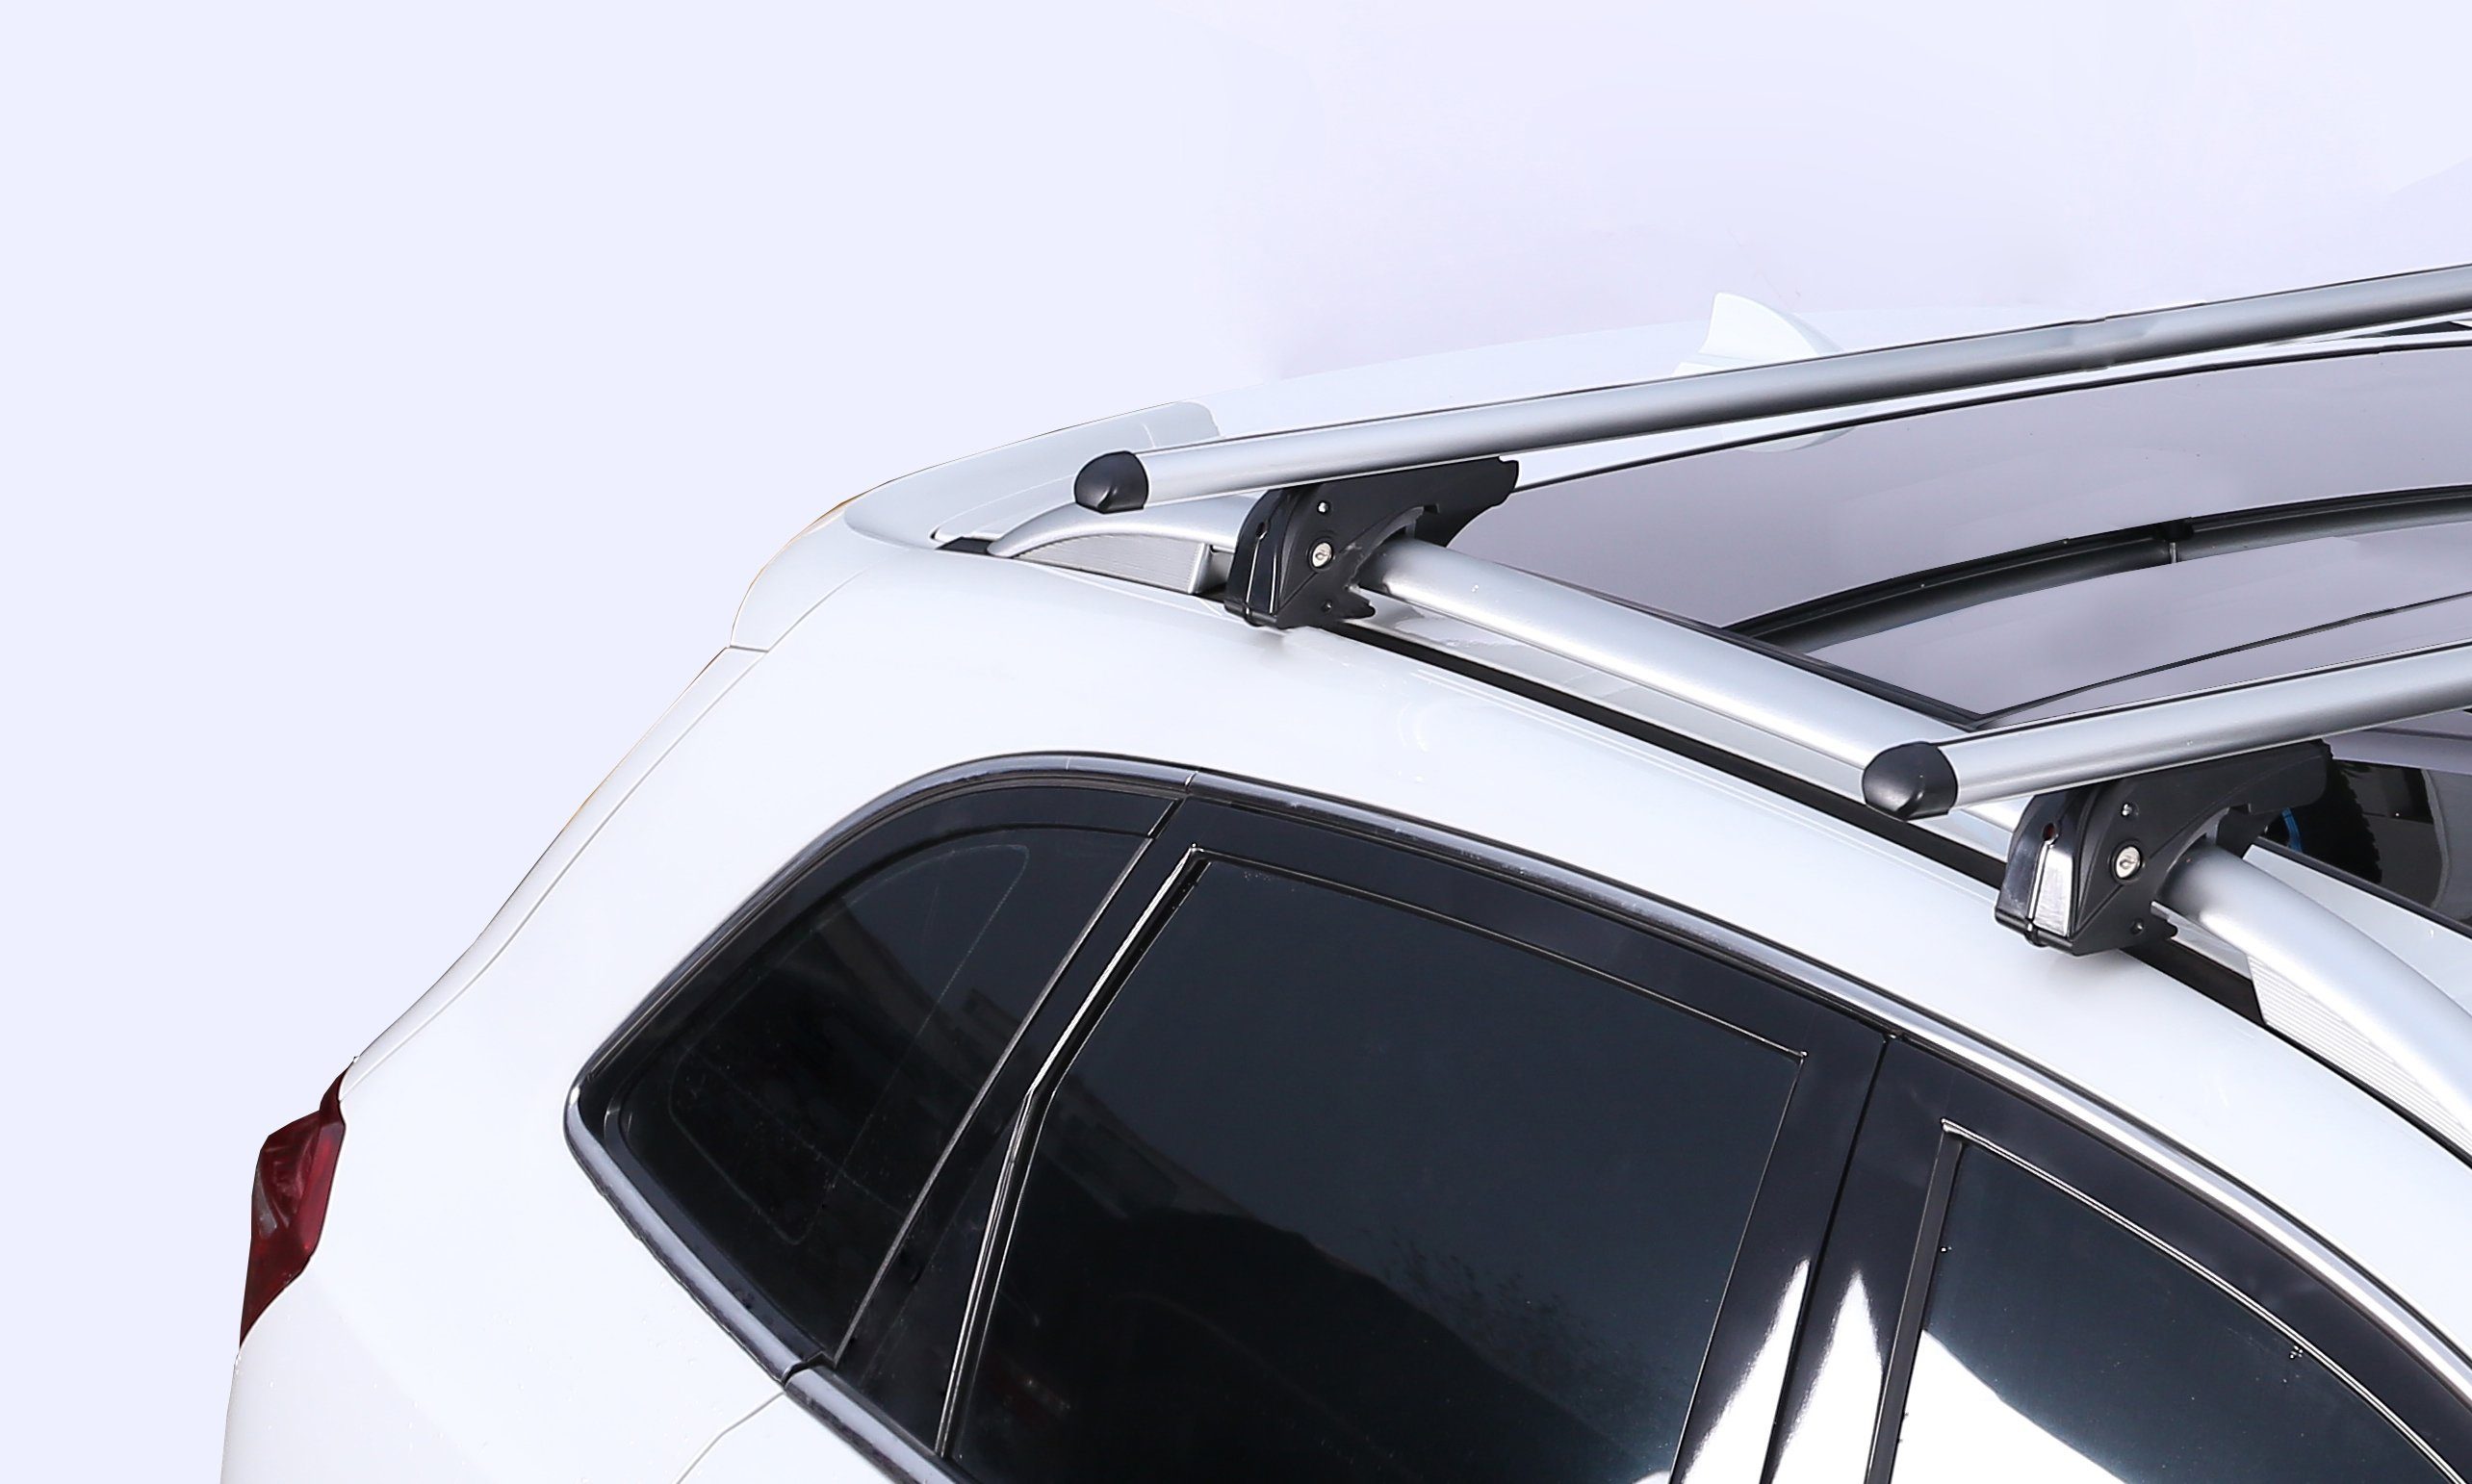 VDP Dachbox, (Für Ihren CUBE470 Mazda 02-08, Türer) (5 6 6 (5 und Dachträger Wagon Set), mit Dachbox + 02-08 Kombi Station VDPLION1 kompatibel Mazda Türer) im Dachträger/Relingträger Dachbox/Gepäckbox